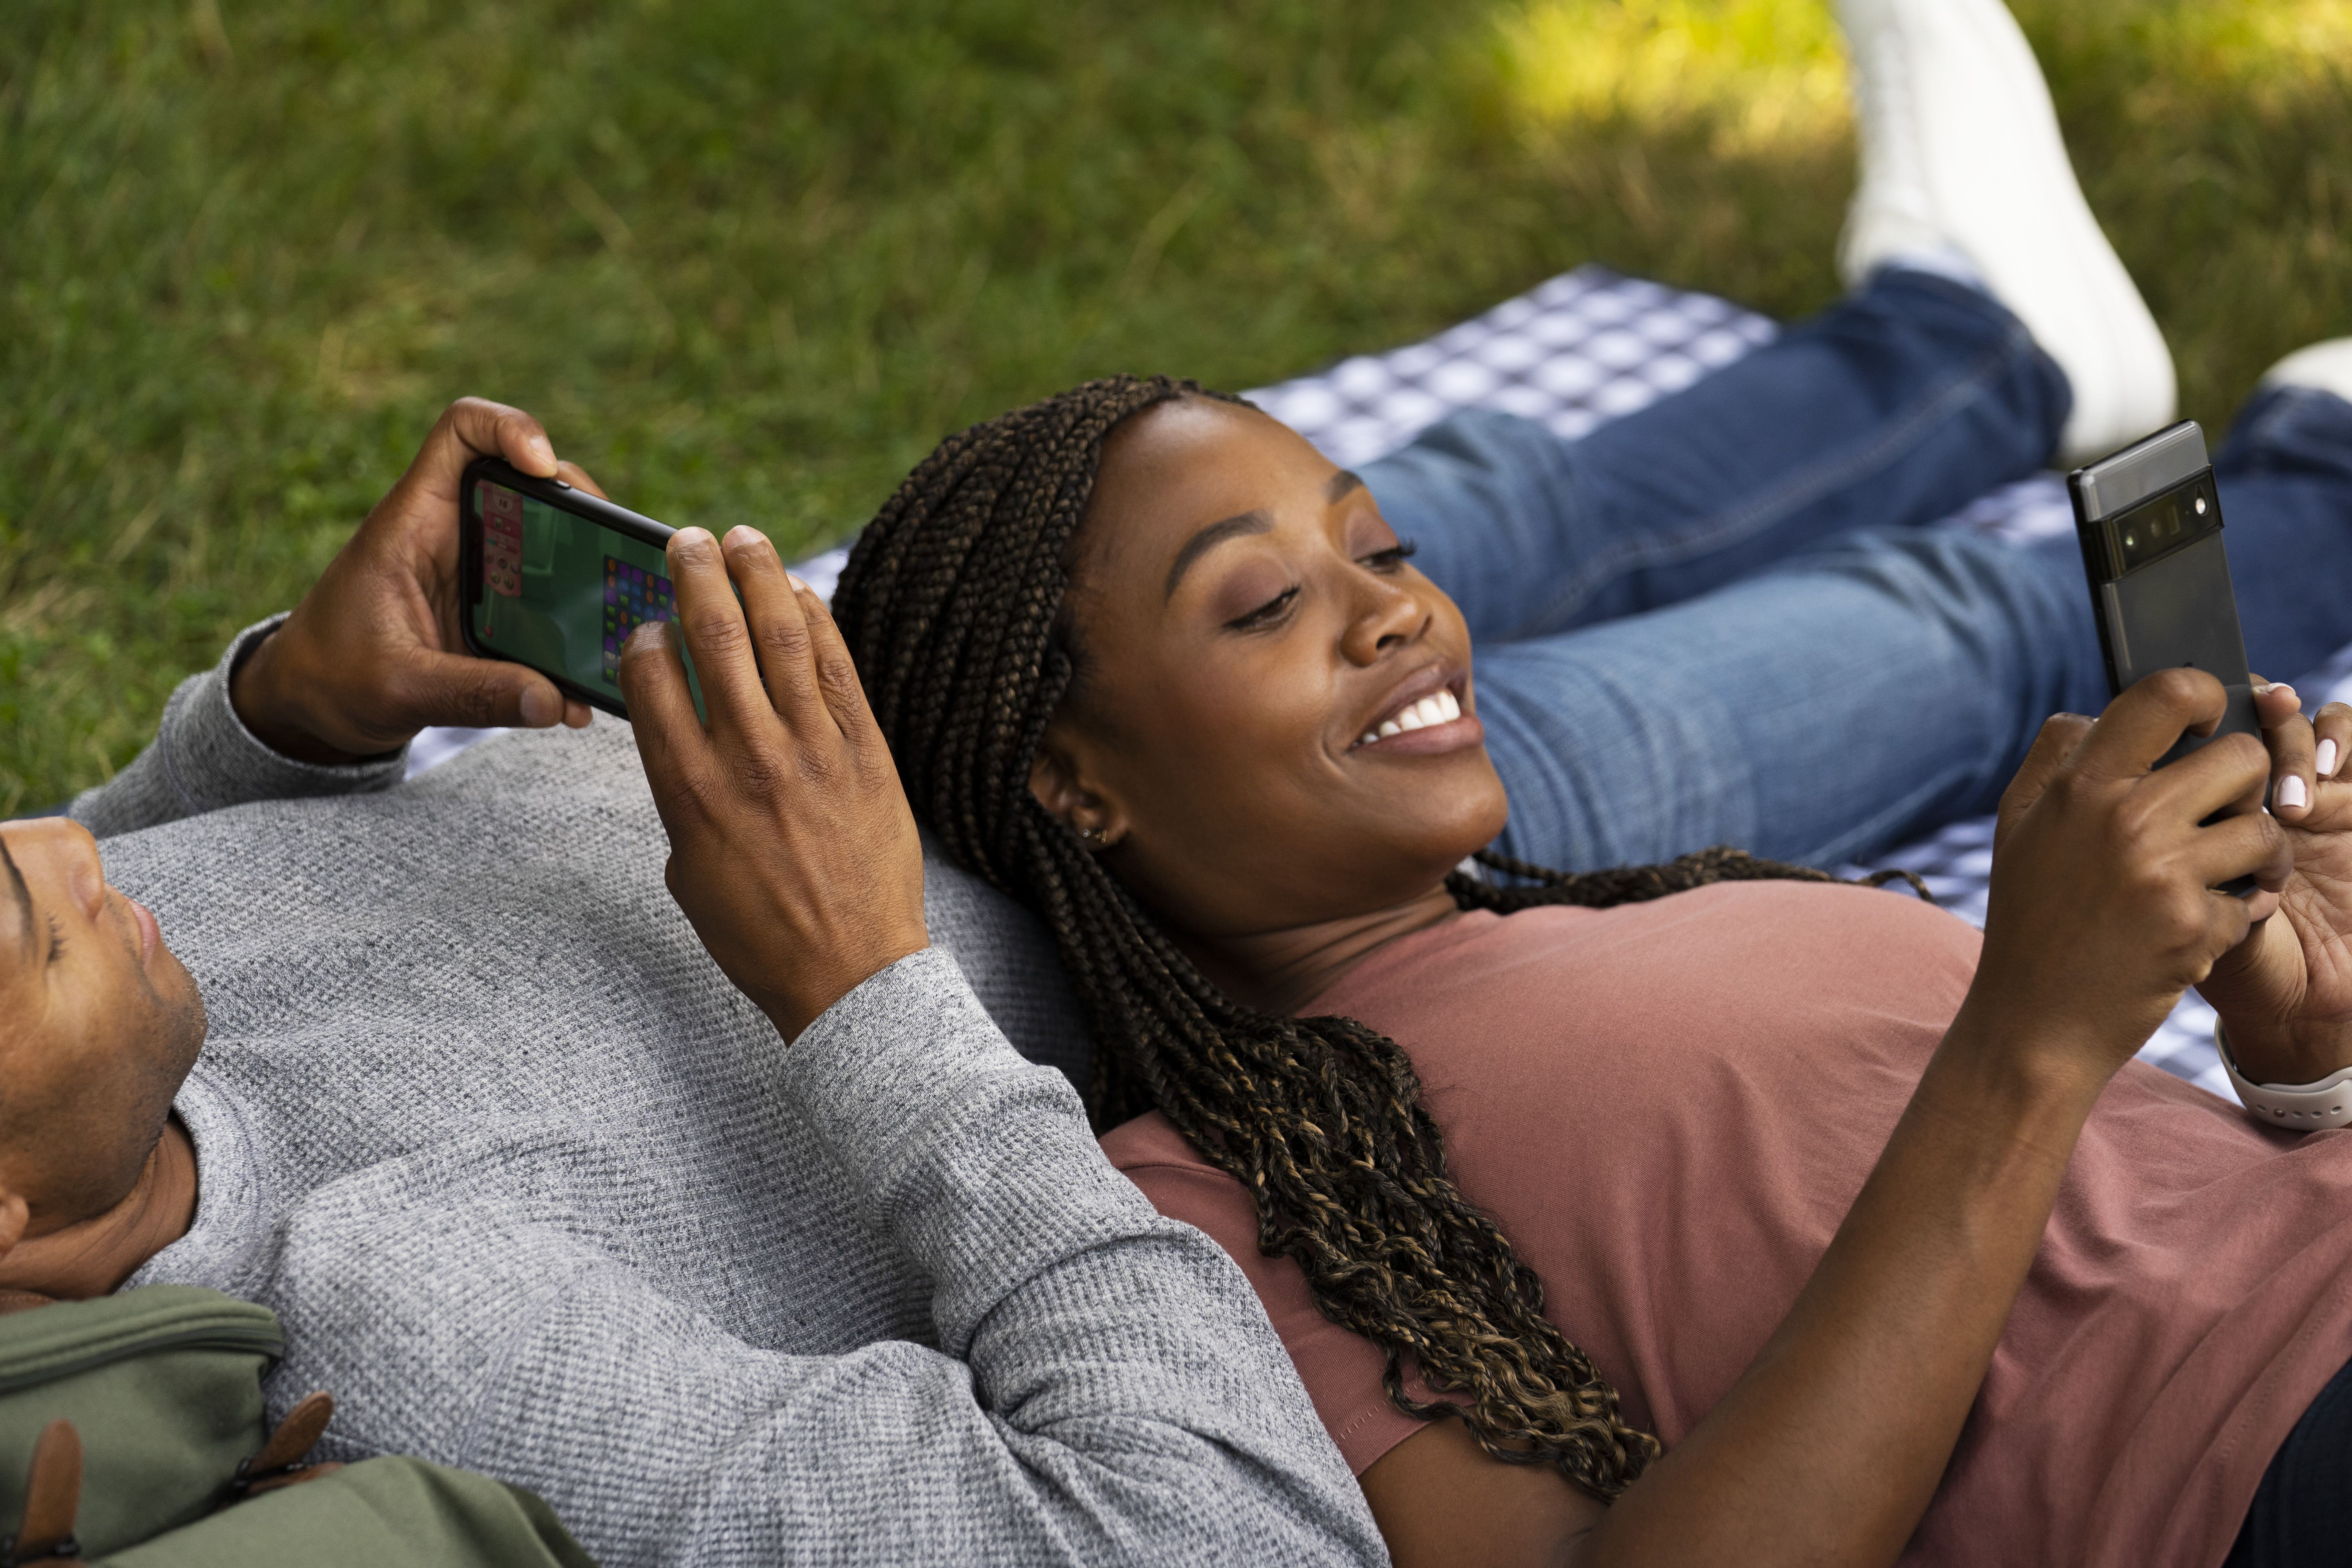 Una pareja feliz juega con los móviles en el exterior.